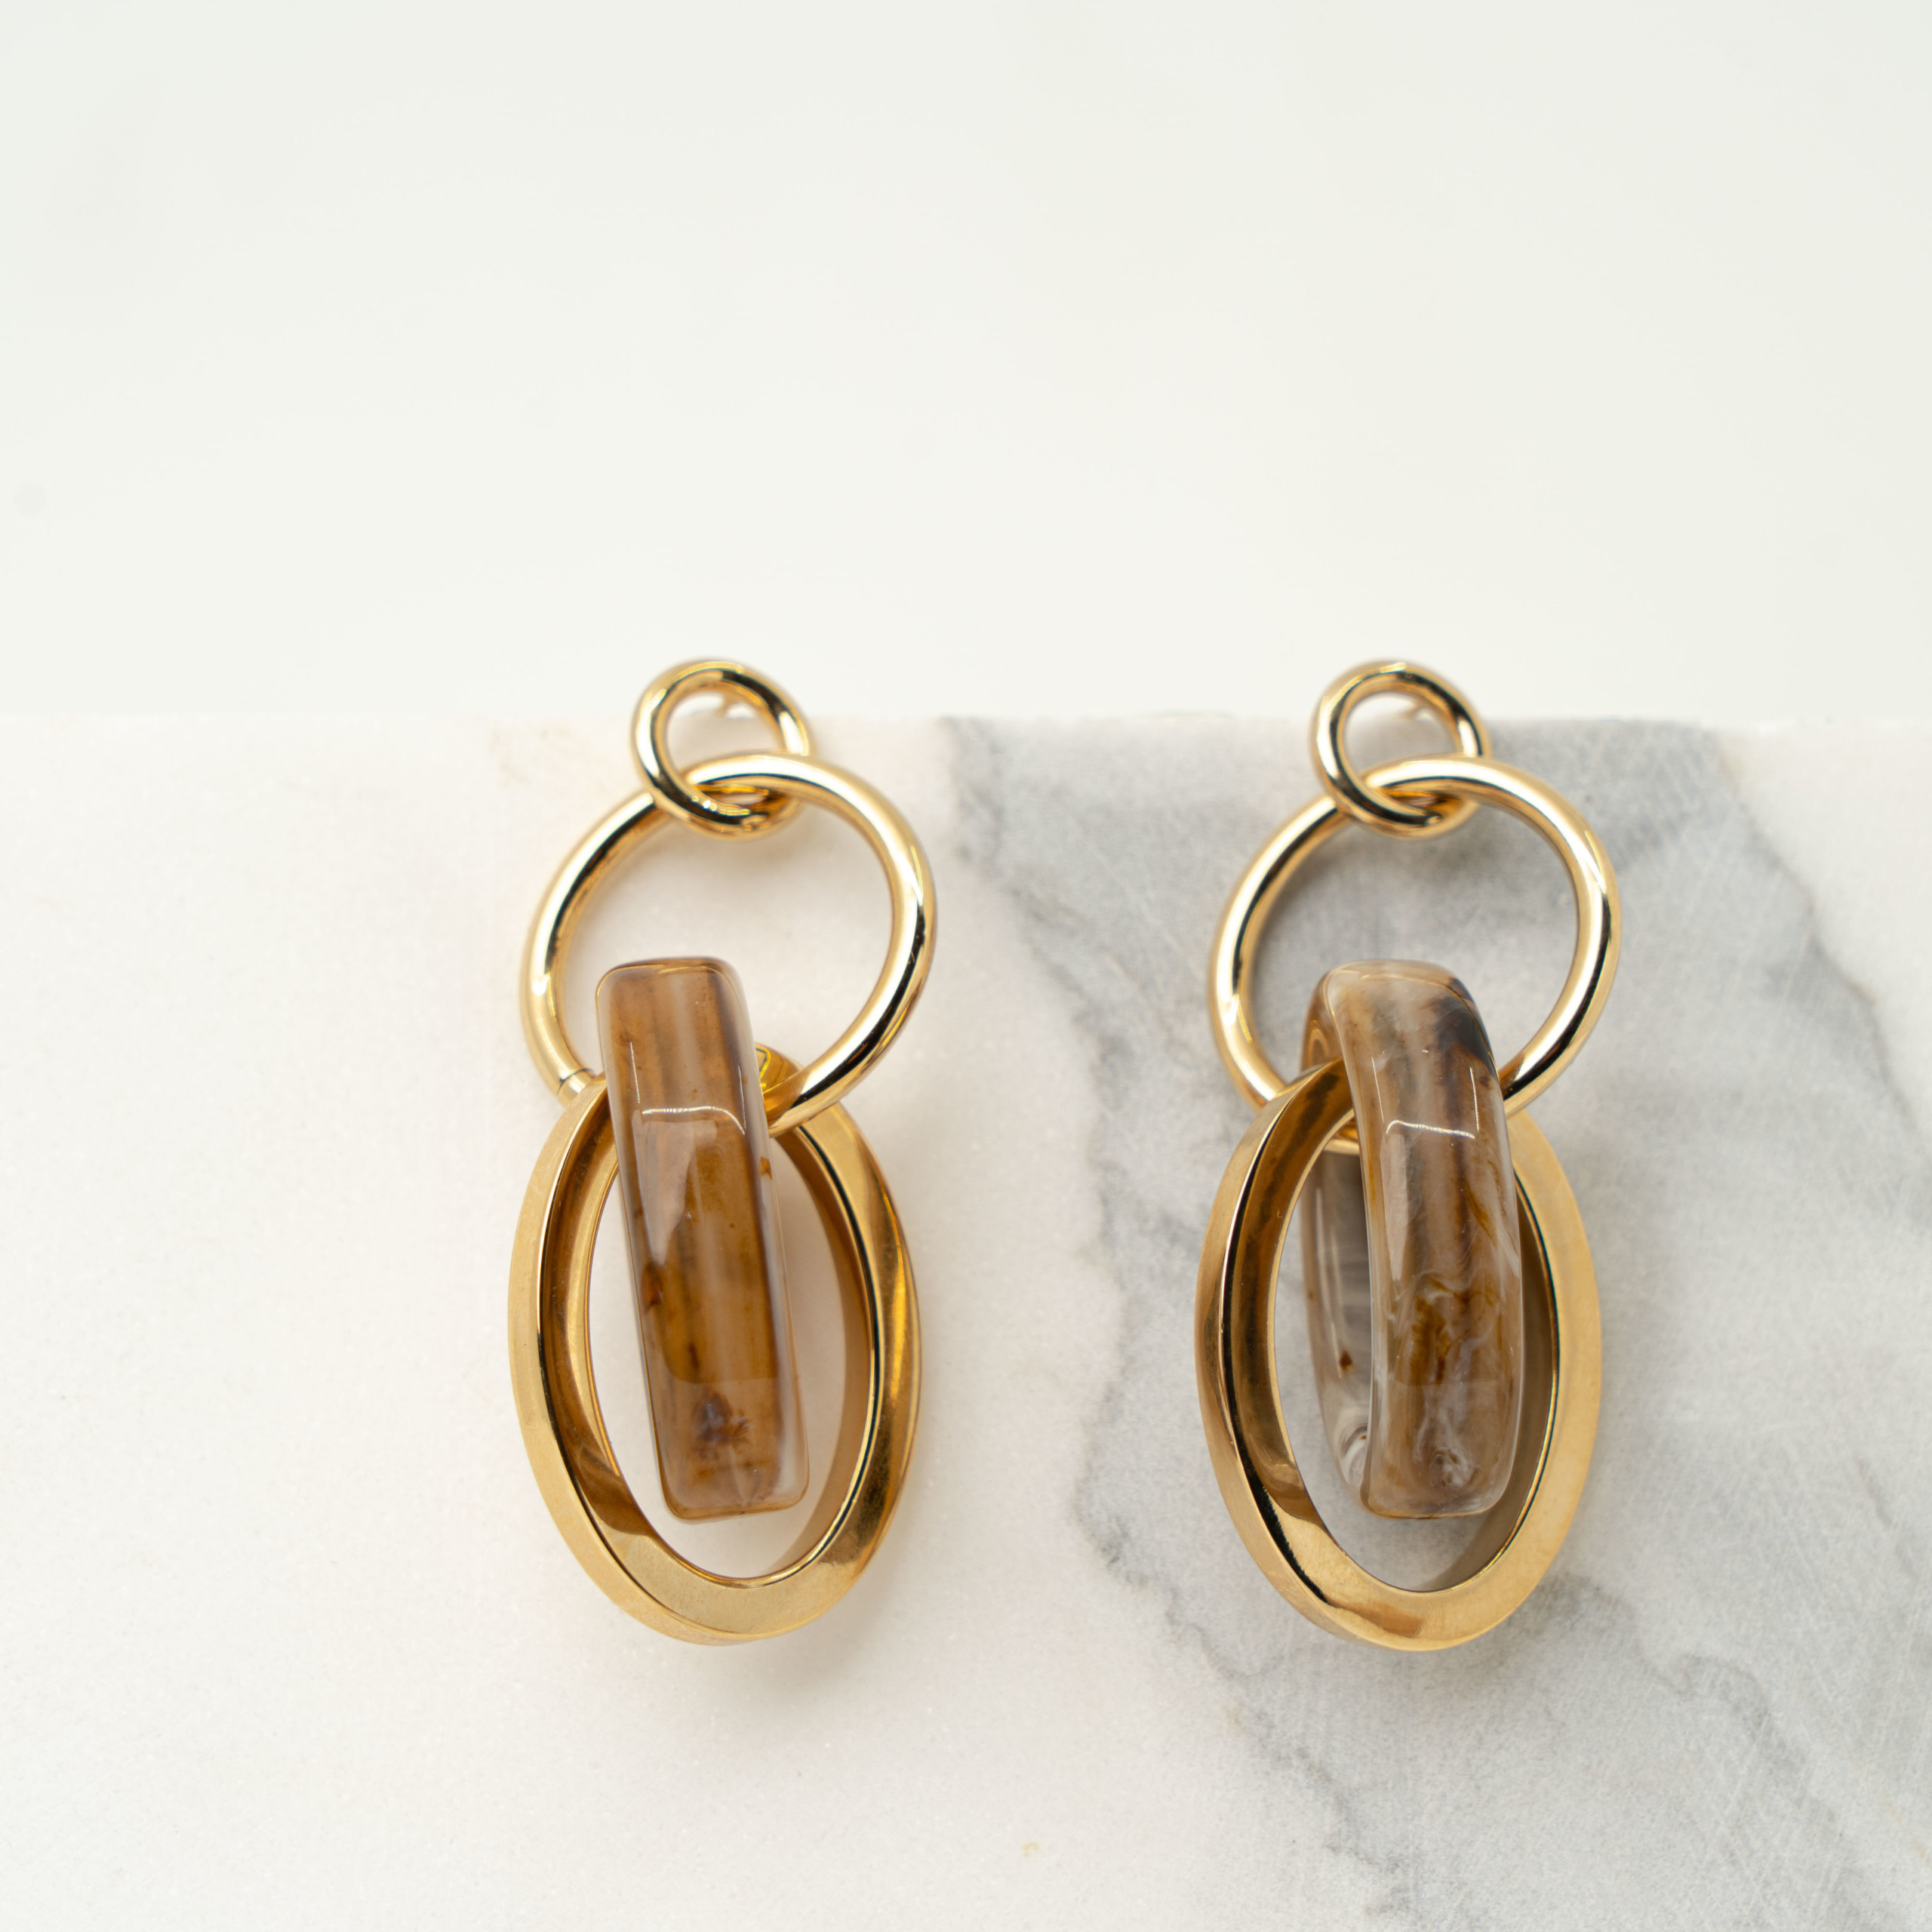 Allegra light brown gold earrings